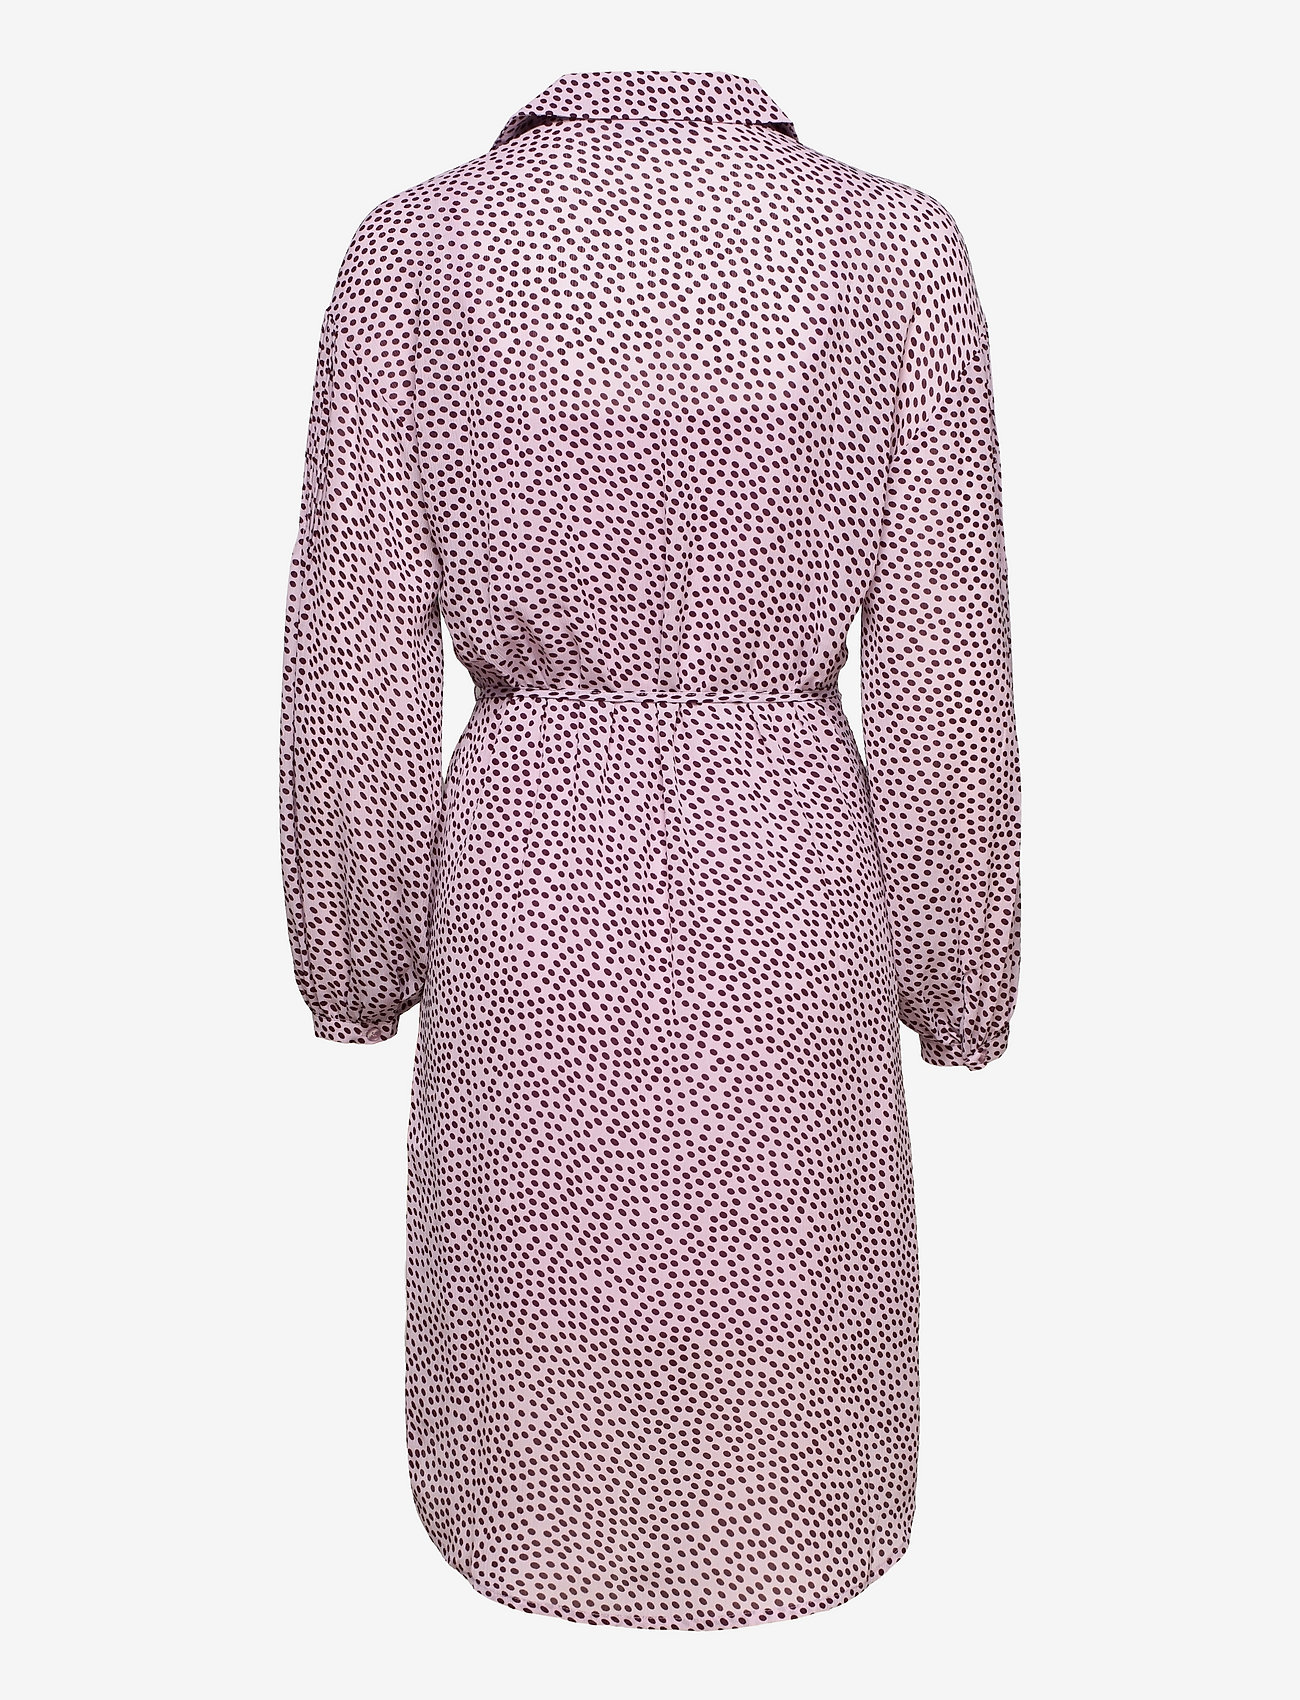 MSCH Copenhagen - Nathea Rikkelie LS Dress AOP - skjortklänningar - lavender f dot - 1